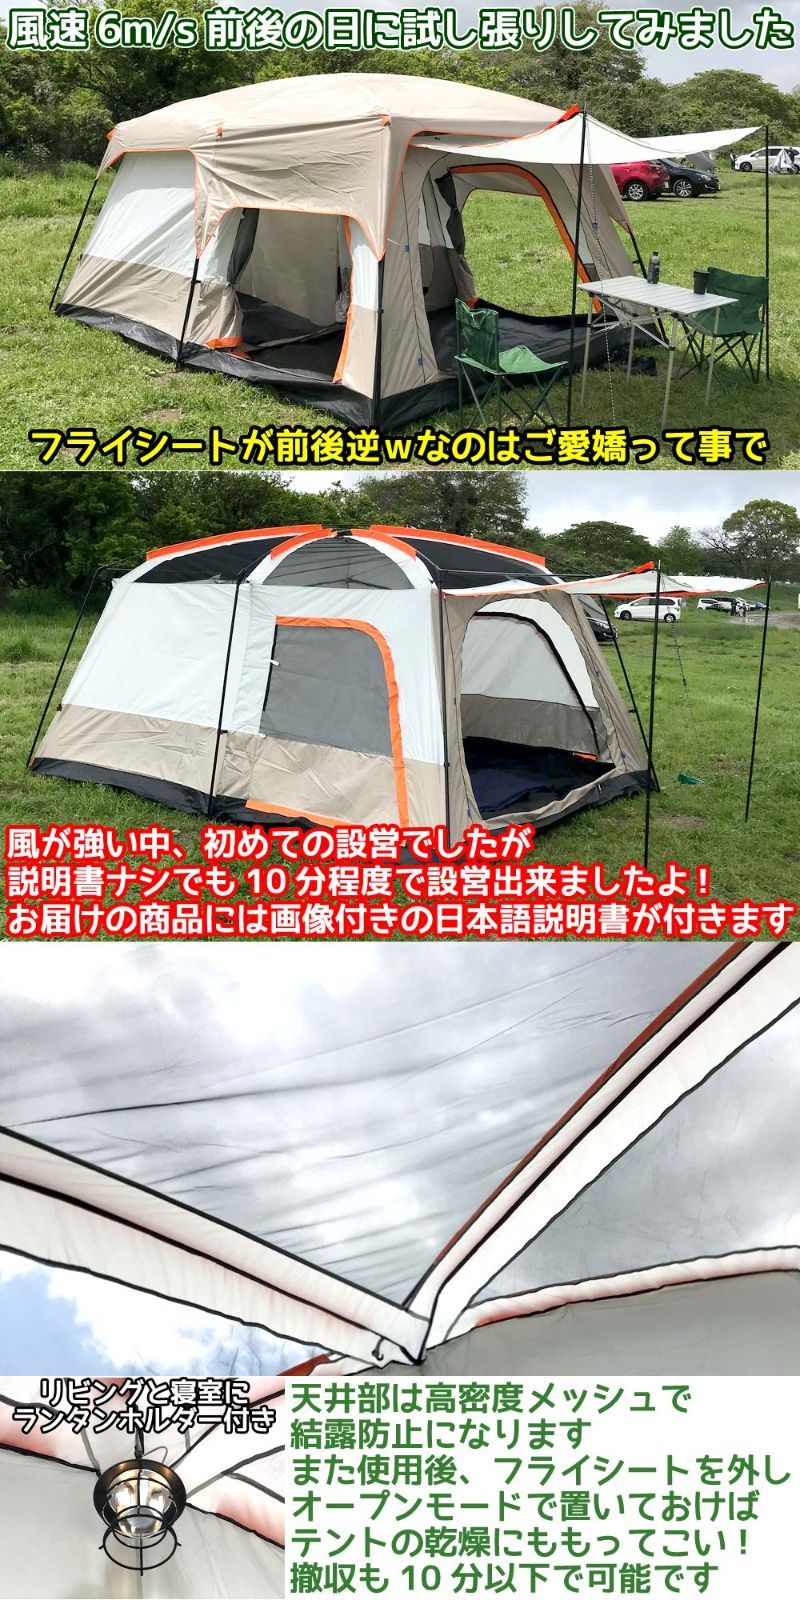 ツールームドームテント 4-10人用 自立式テント キャノピー付 UVカット 耐水圧2000mm 190Dオックスフォード 2ベッドルーム1リビング  ファミリーキャンプ ファミリーテント キャノピードームテント アウトドア